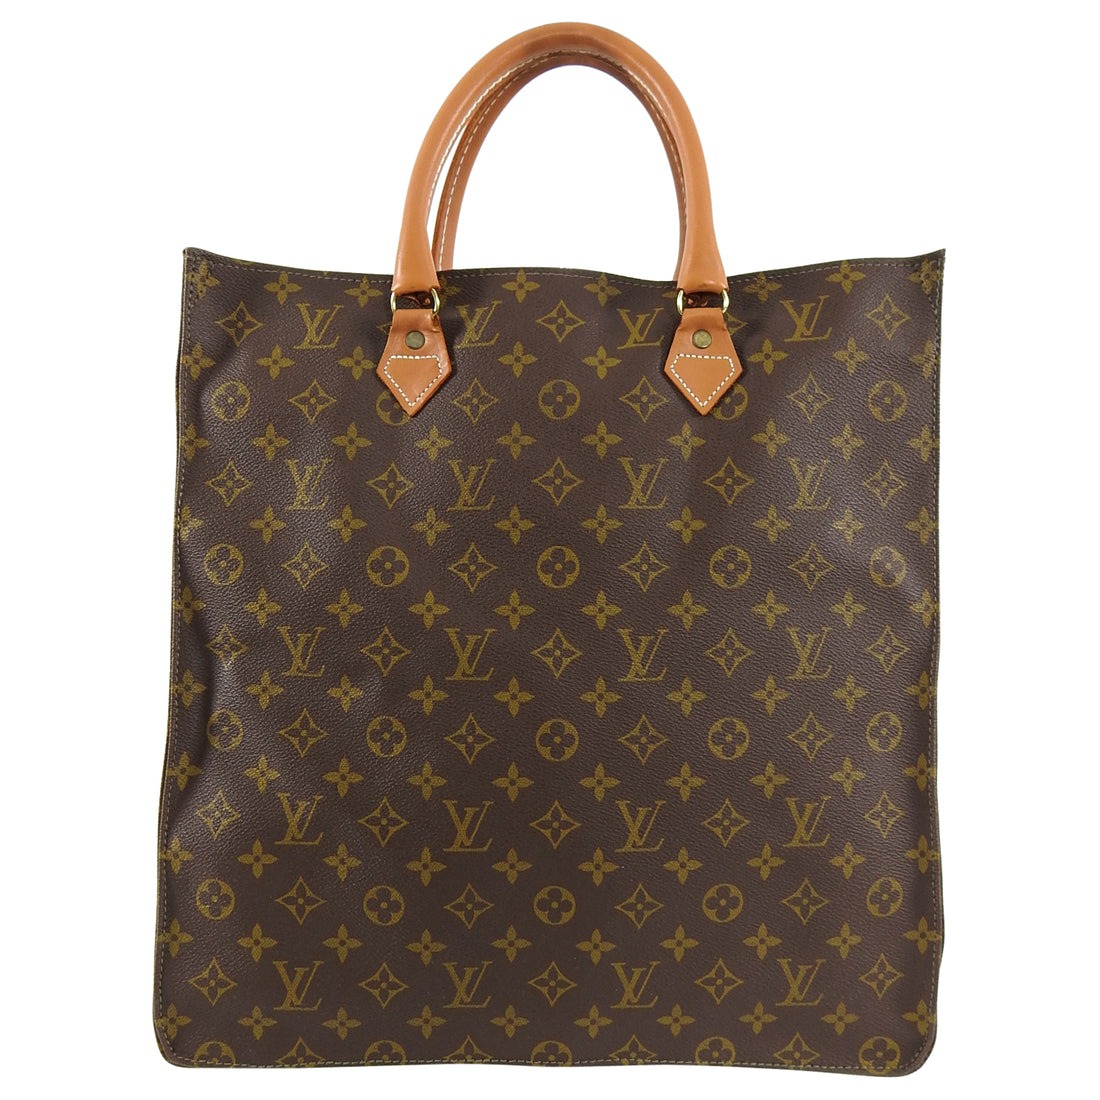 Vintage Authentic Louis Vuitton tote bag / laptop bag / large